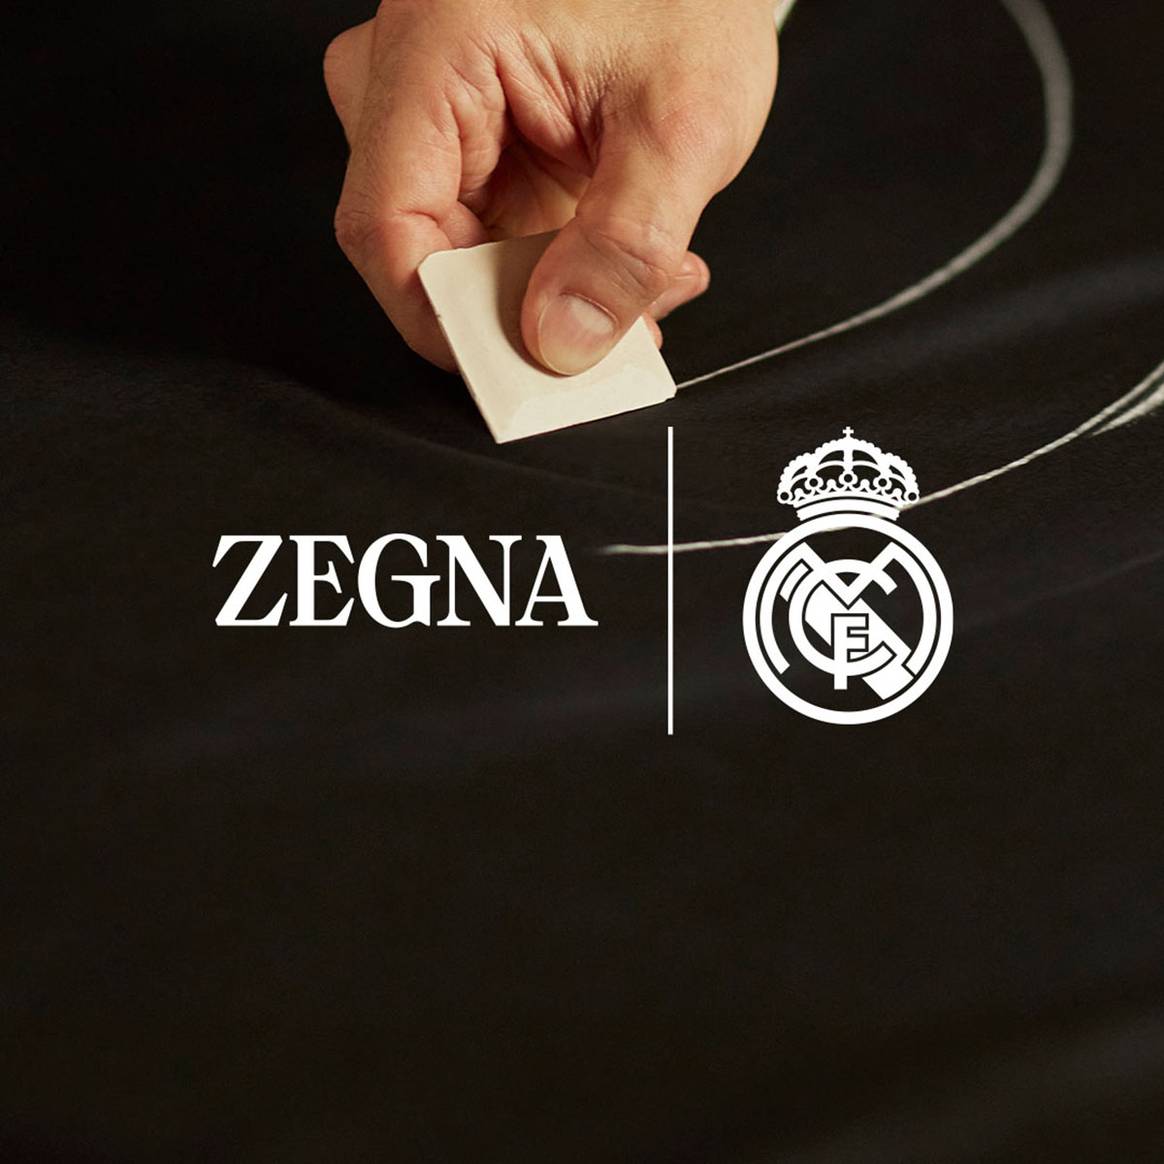 Photo Credits: Zegna, para el Real Madrid, por cortesía de Zegna.